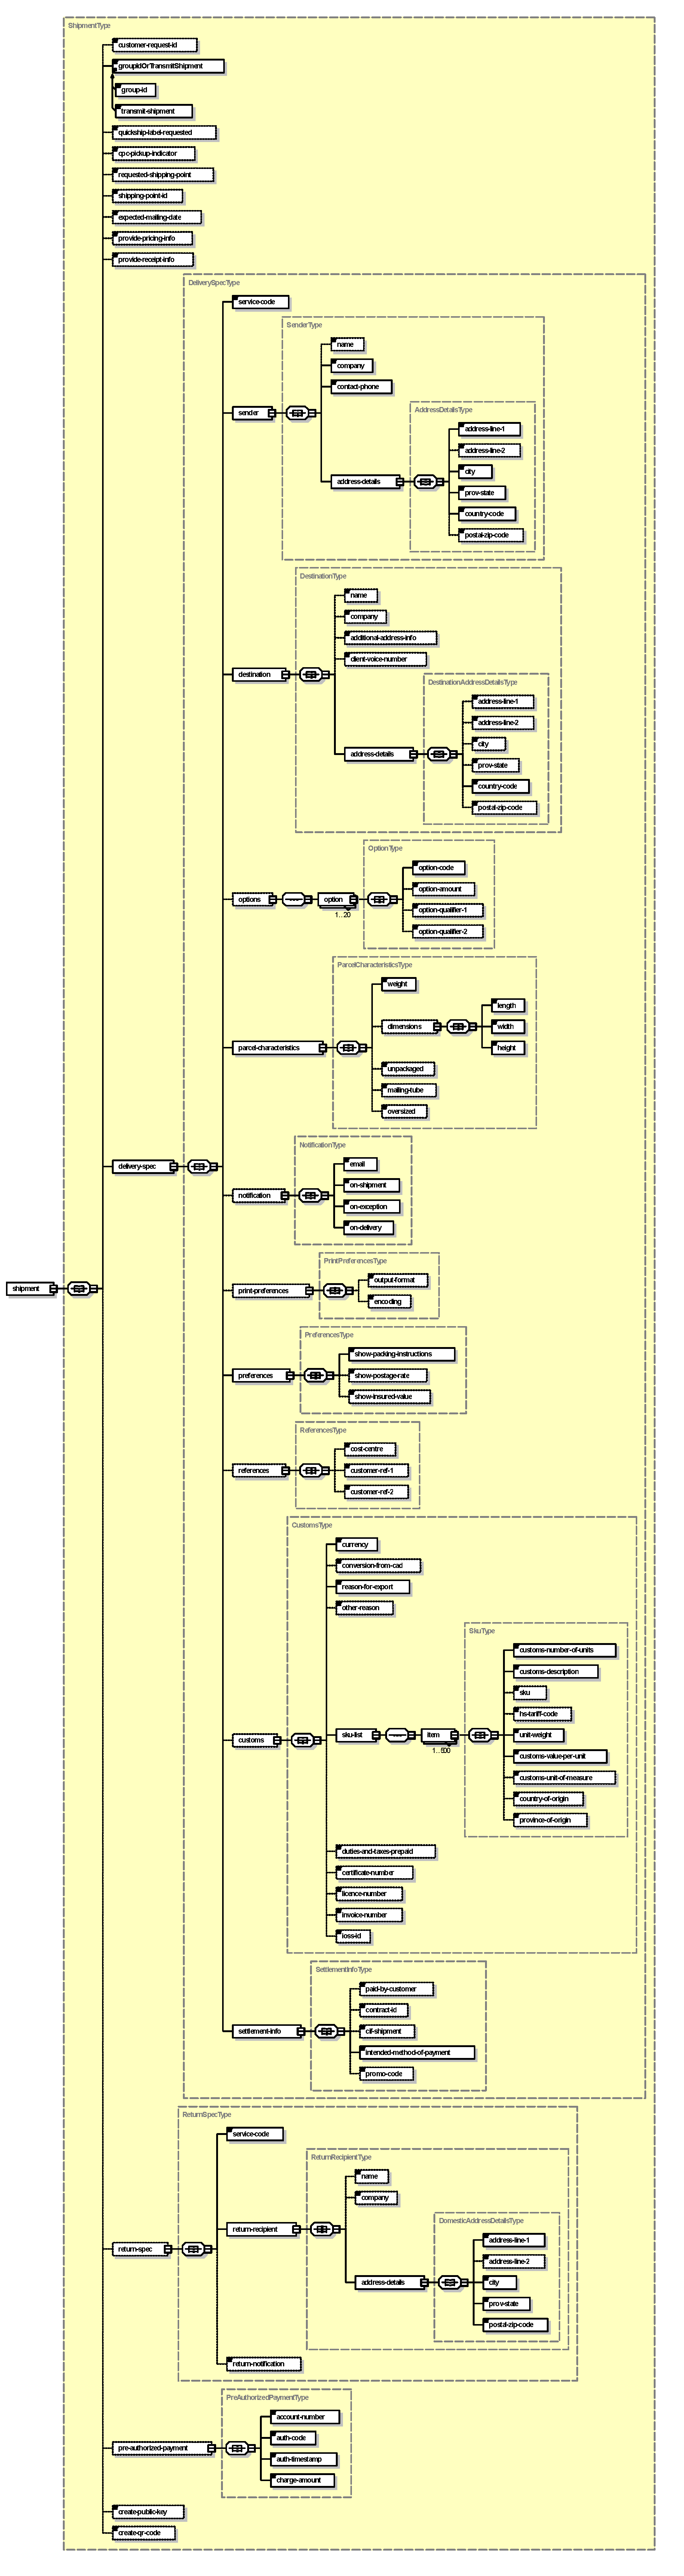 Diag 2 - diagramme XML de demande createShipment (spécifications de livraison)